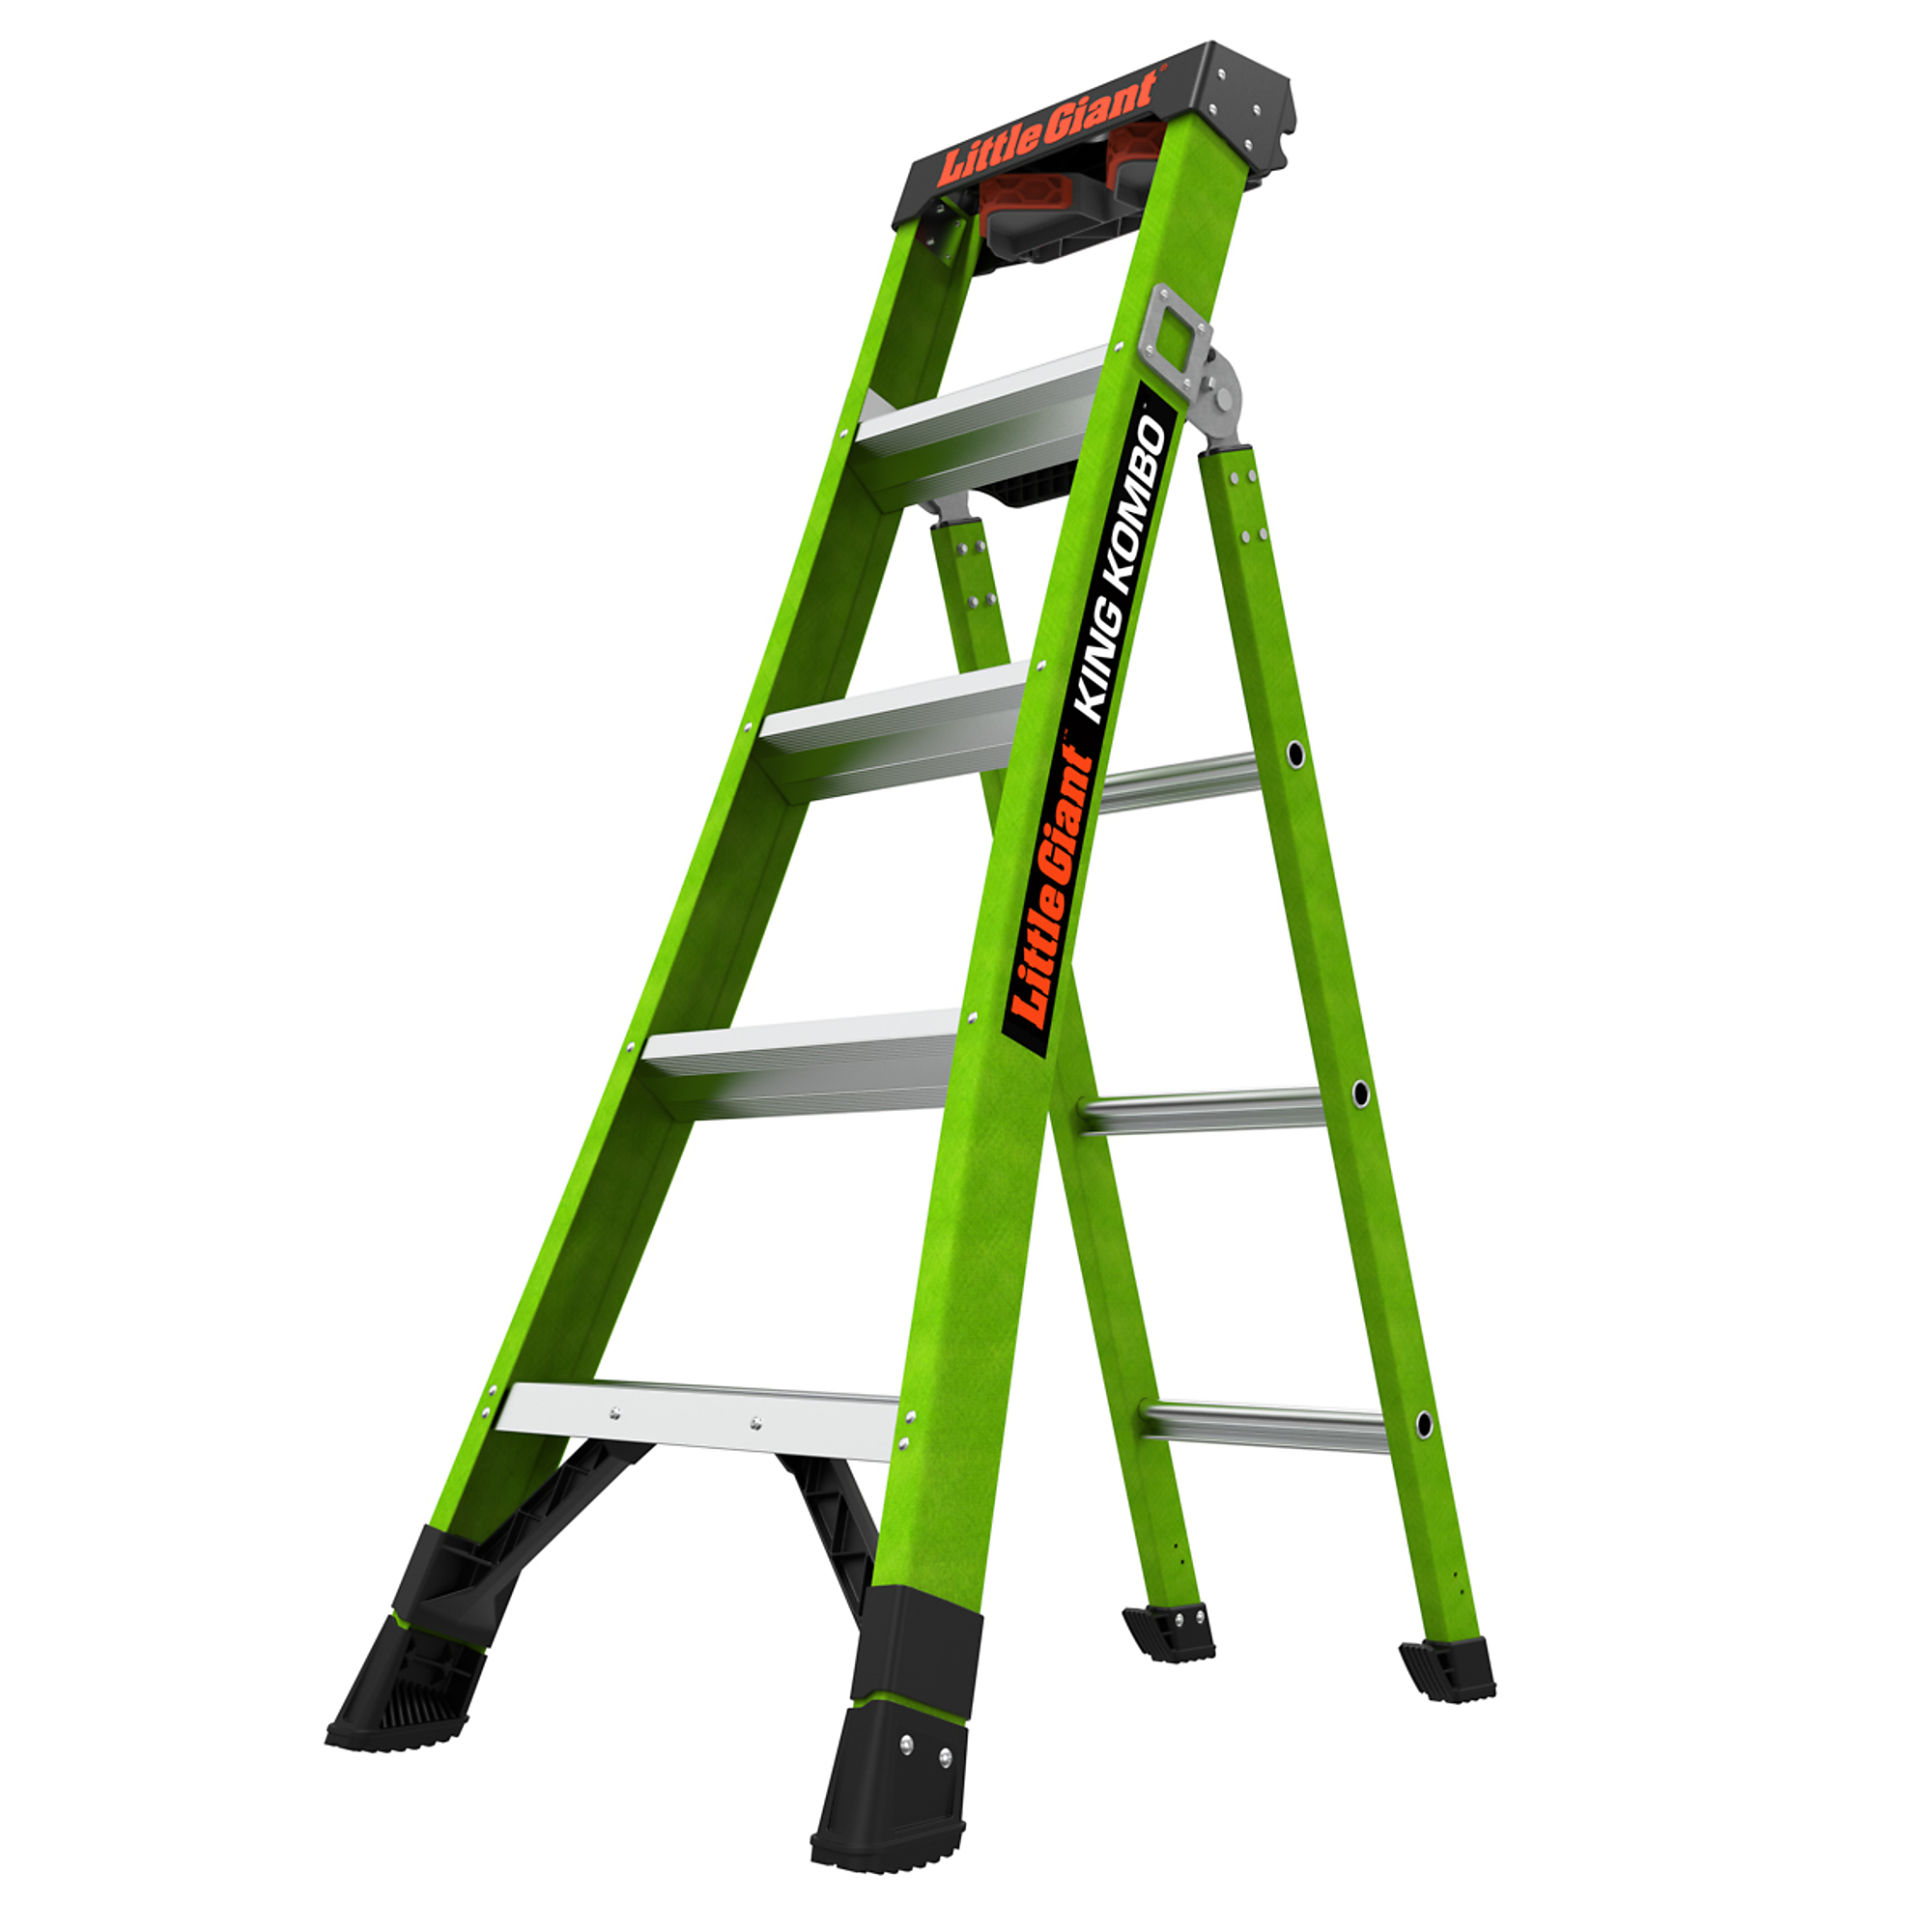 KING KOMBO Profes 5ft. 375lb Fiberglass Combo Ladder, Height 5 ft, Capacity 375 lb, Material Fiberglass, Model - Little Giant Ladder 13905-001